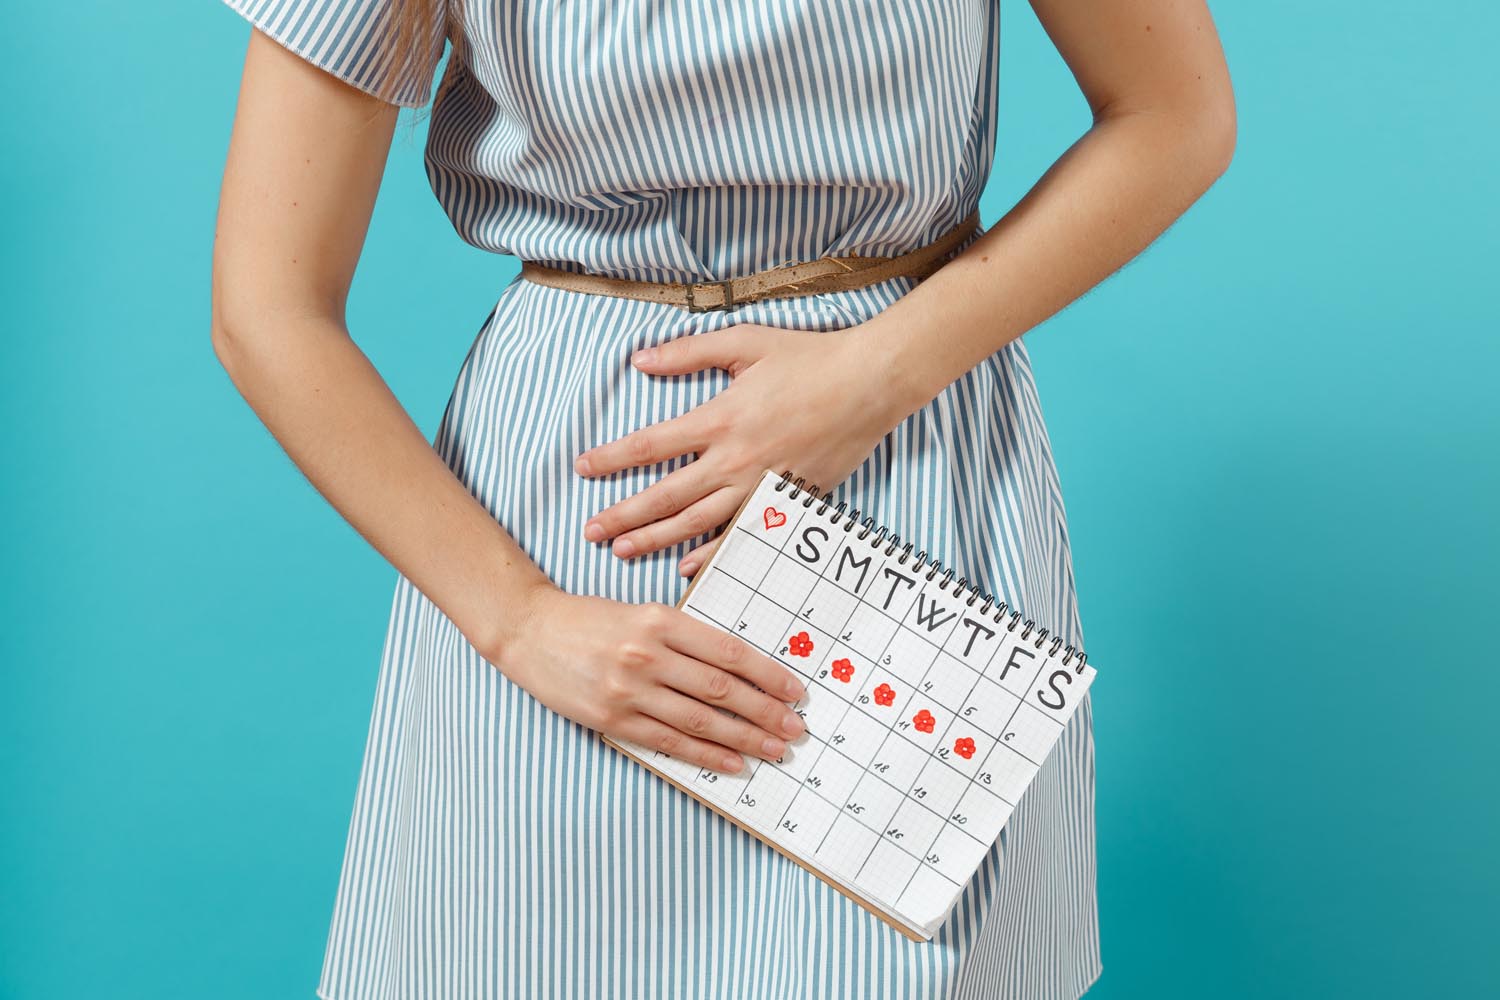 Seks 5 dana prije ovulacije